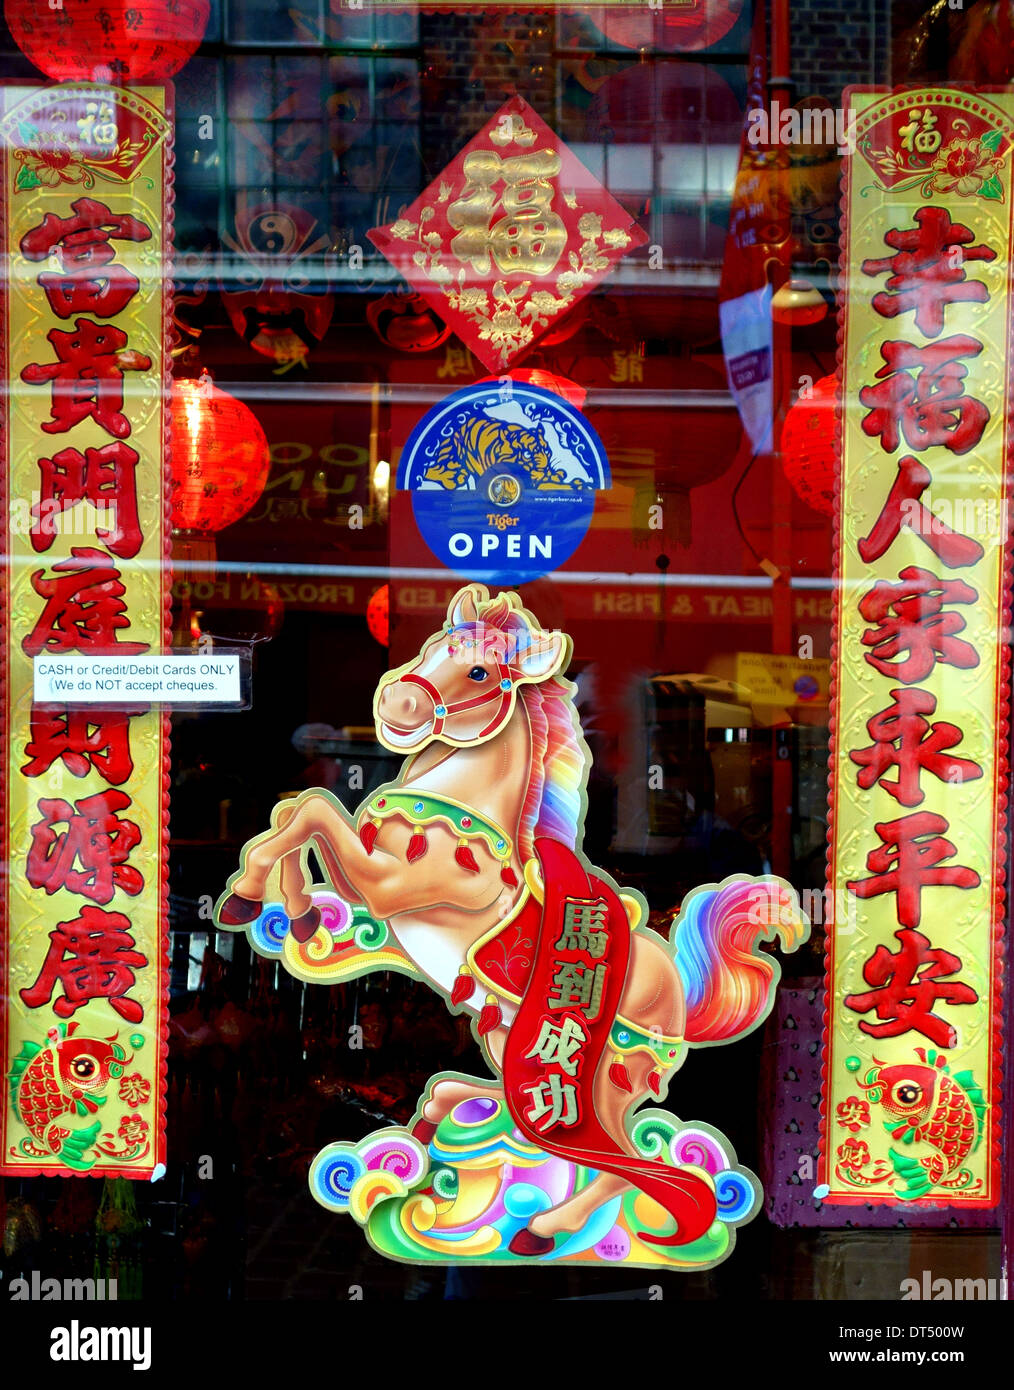 L'année chinoise du cheval signer dans le quartier chinois de Londres, fenêtre Banque D'Images